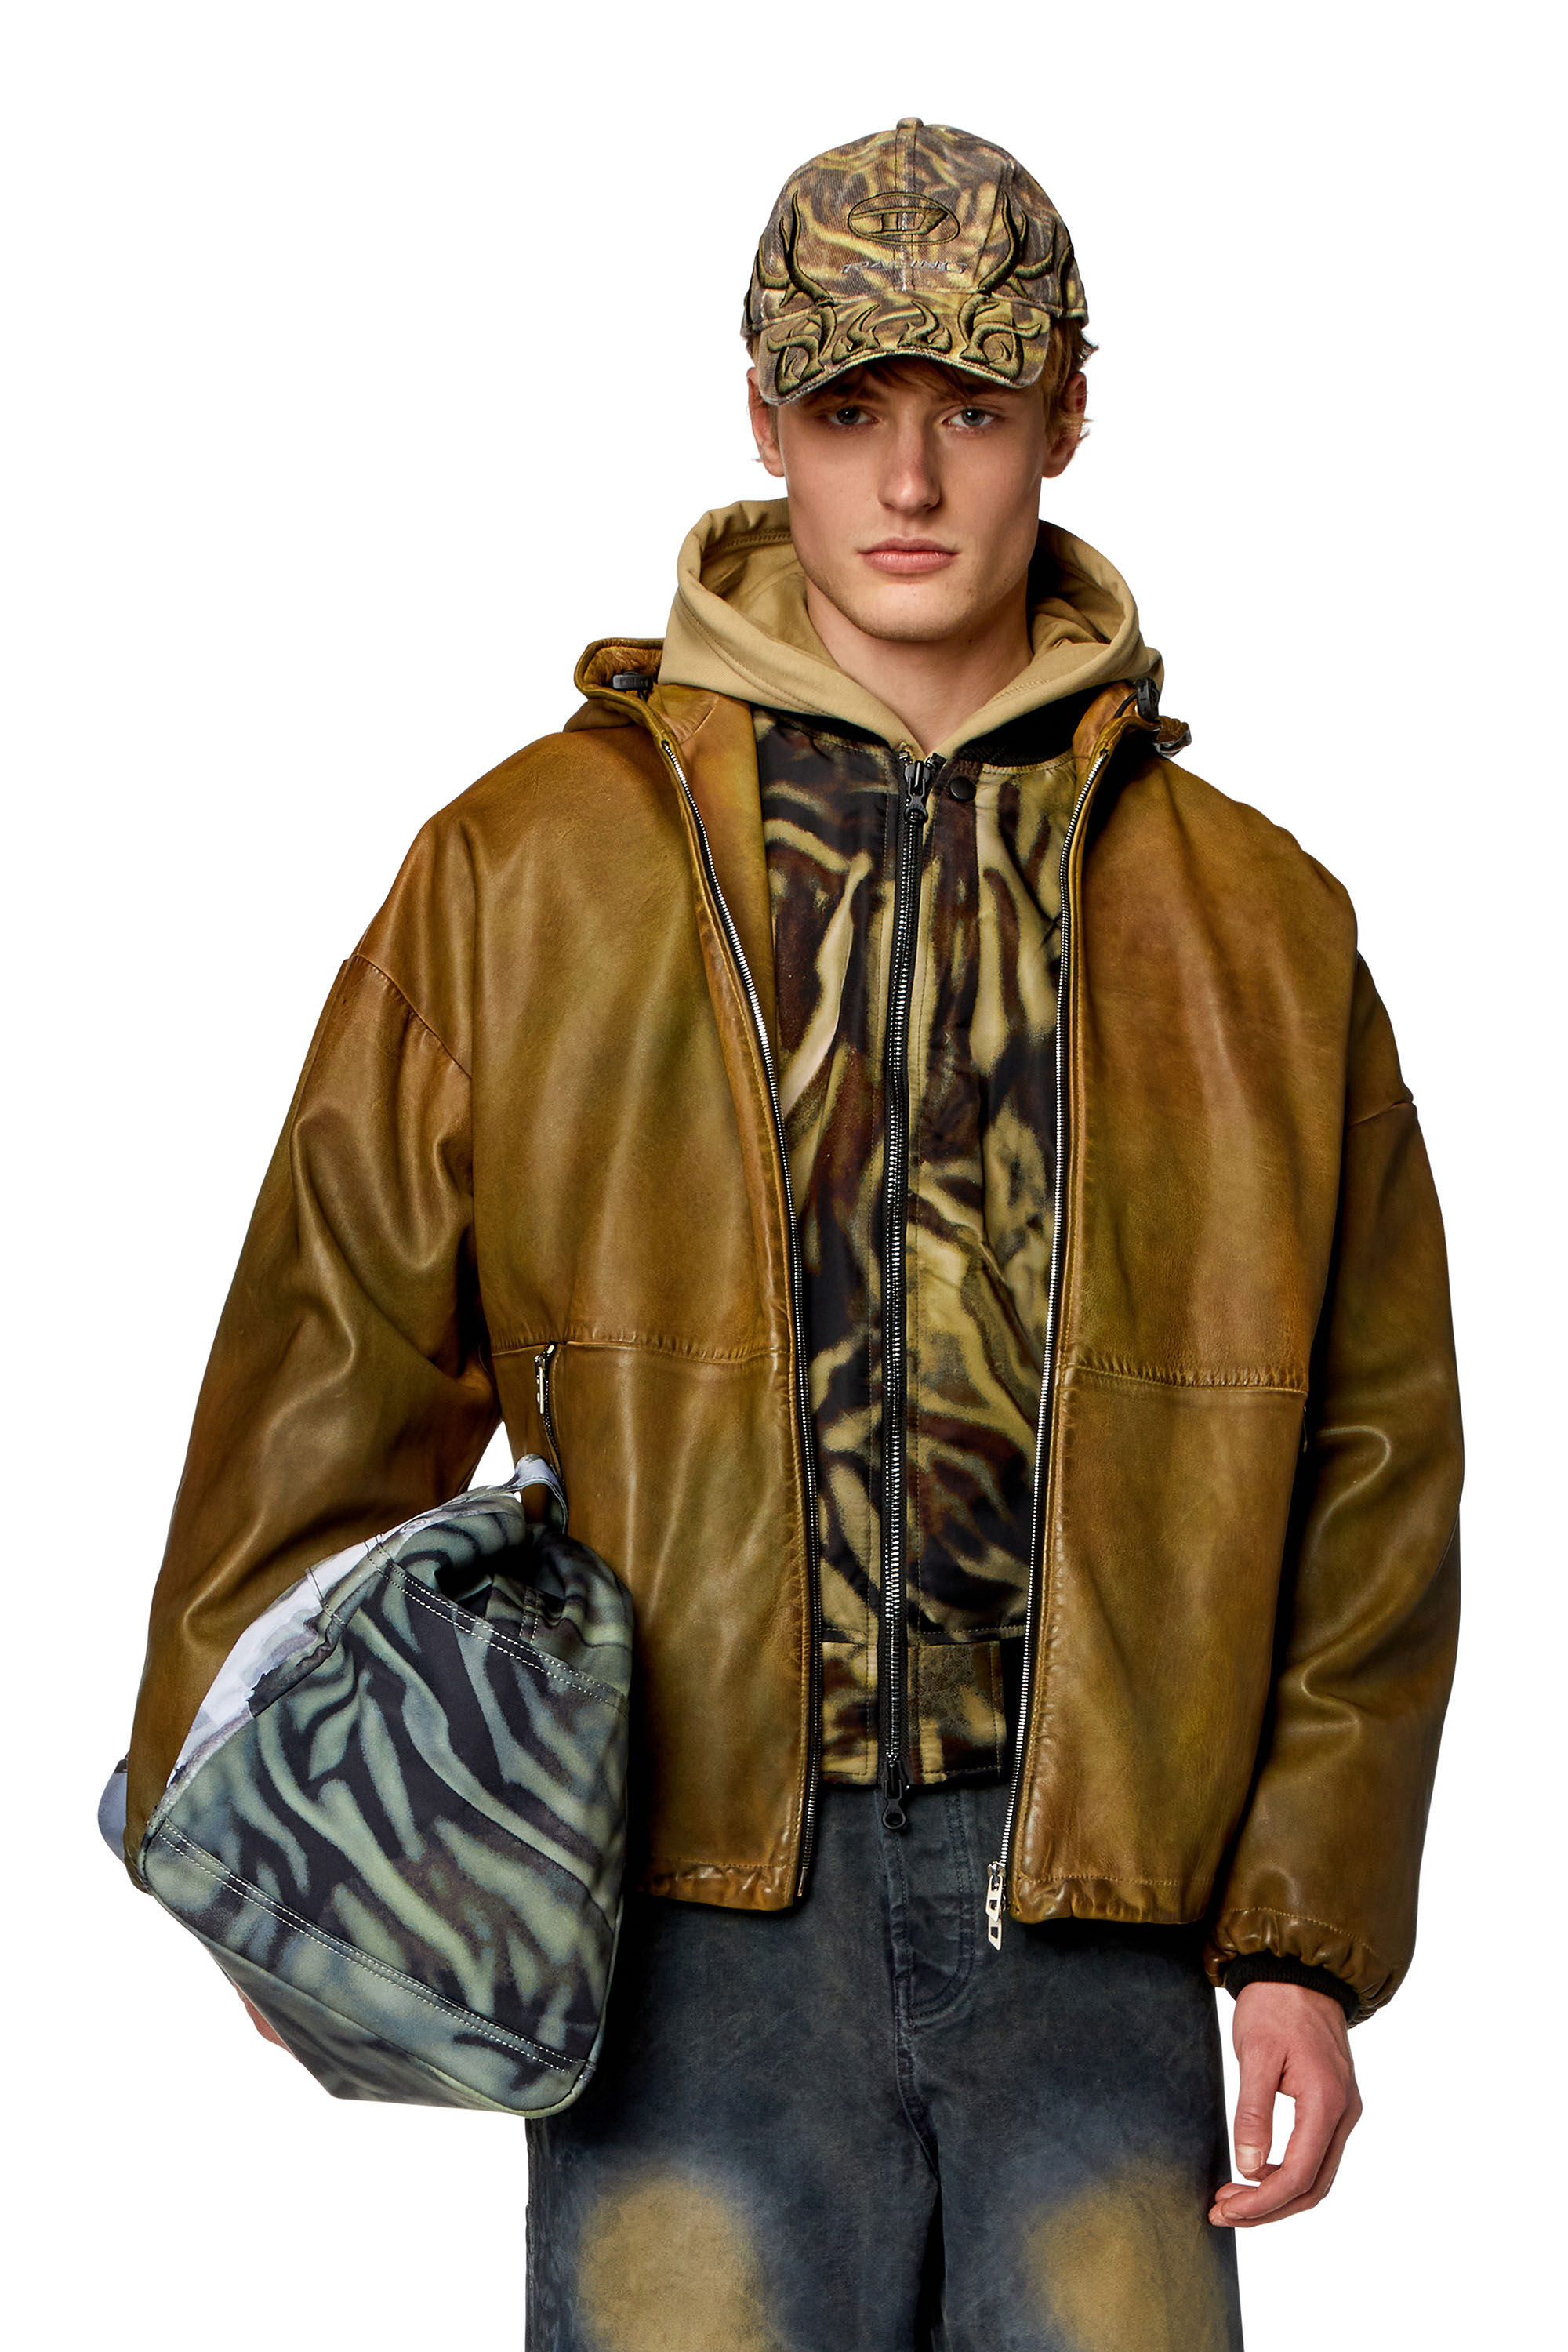 Diesel - L-VATEL-HOODY, Man Hooded leather jacket in Brown - Image 3